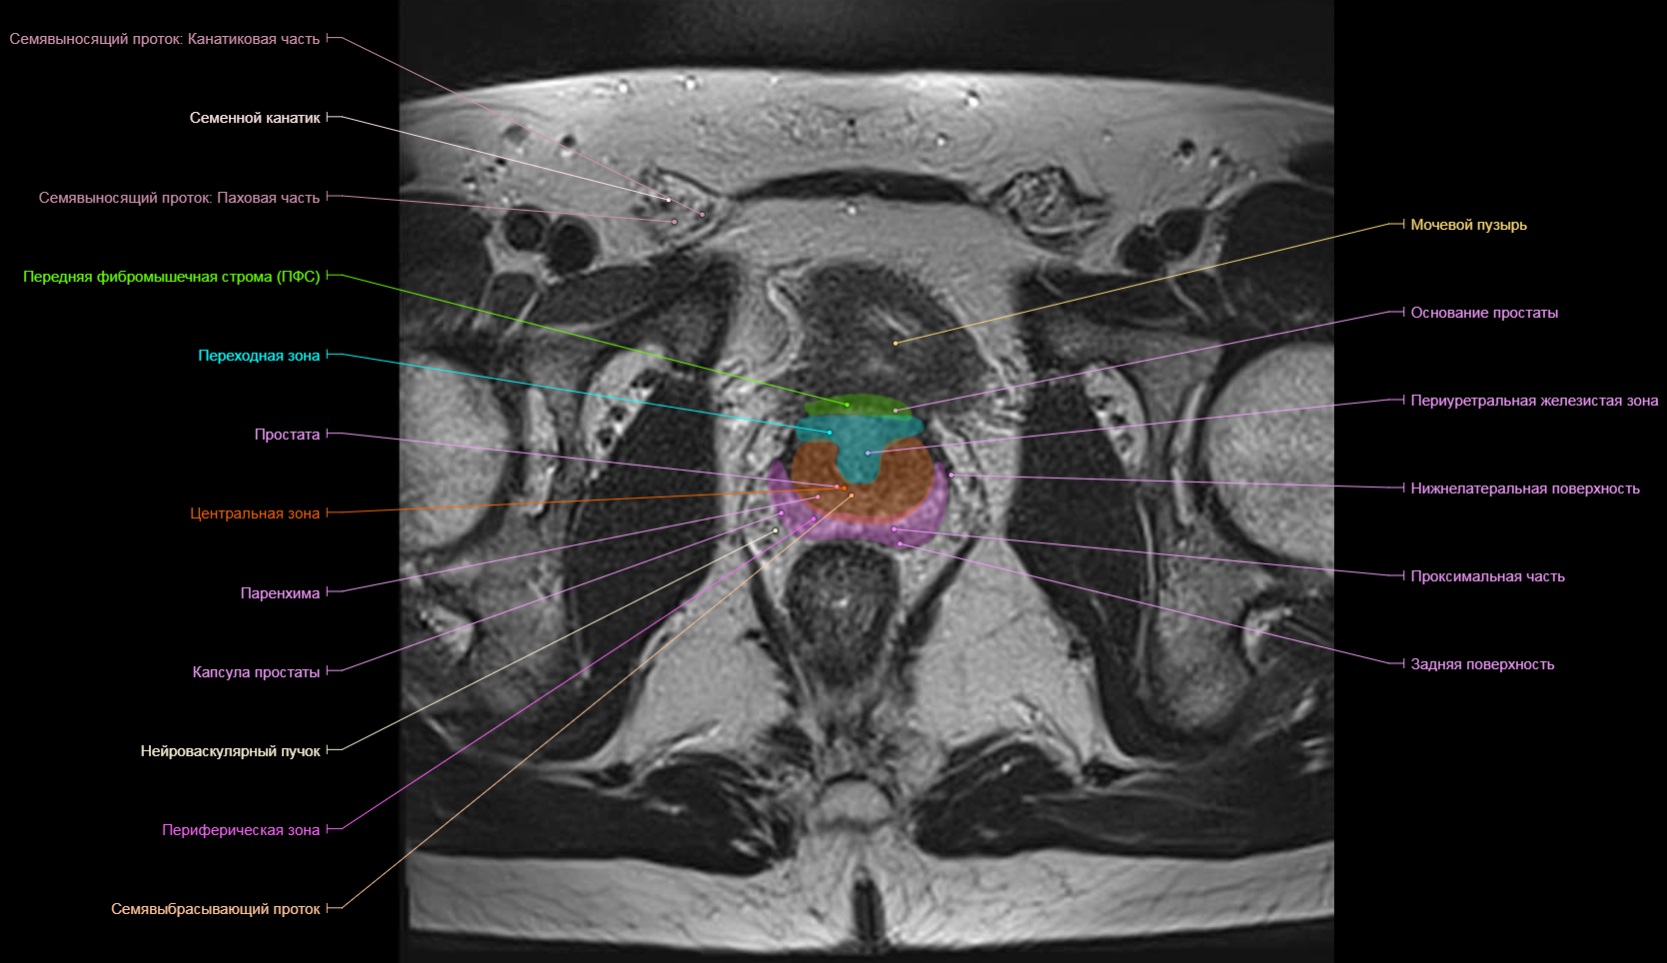 Т простаты. Сегменты предстательной железы мрт. Анатомия предстательной железы мрт схема. Зональная анатомия предстательной железы мрт. Зональное строение предстательной железы мрт.